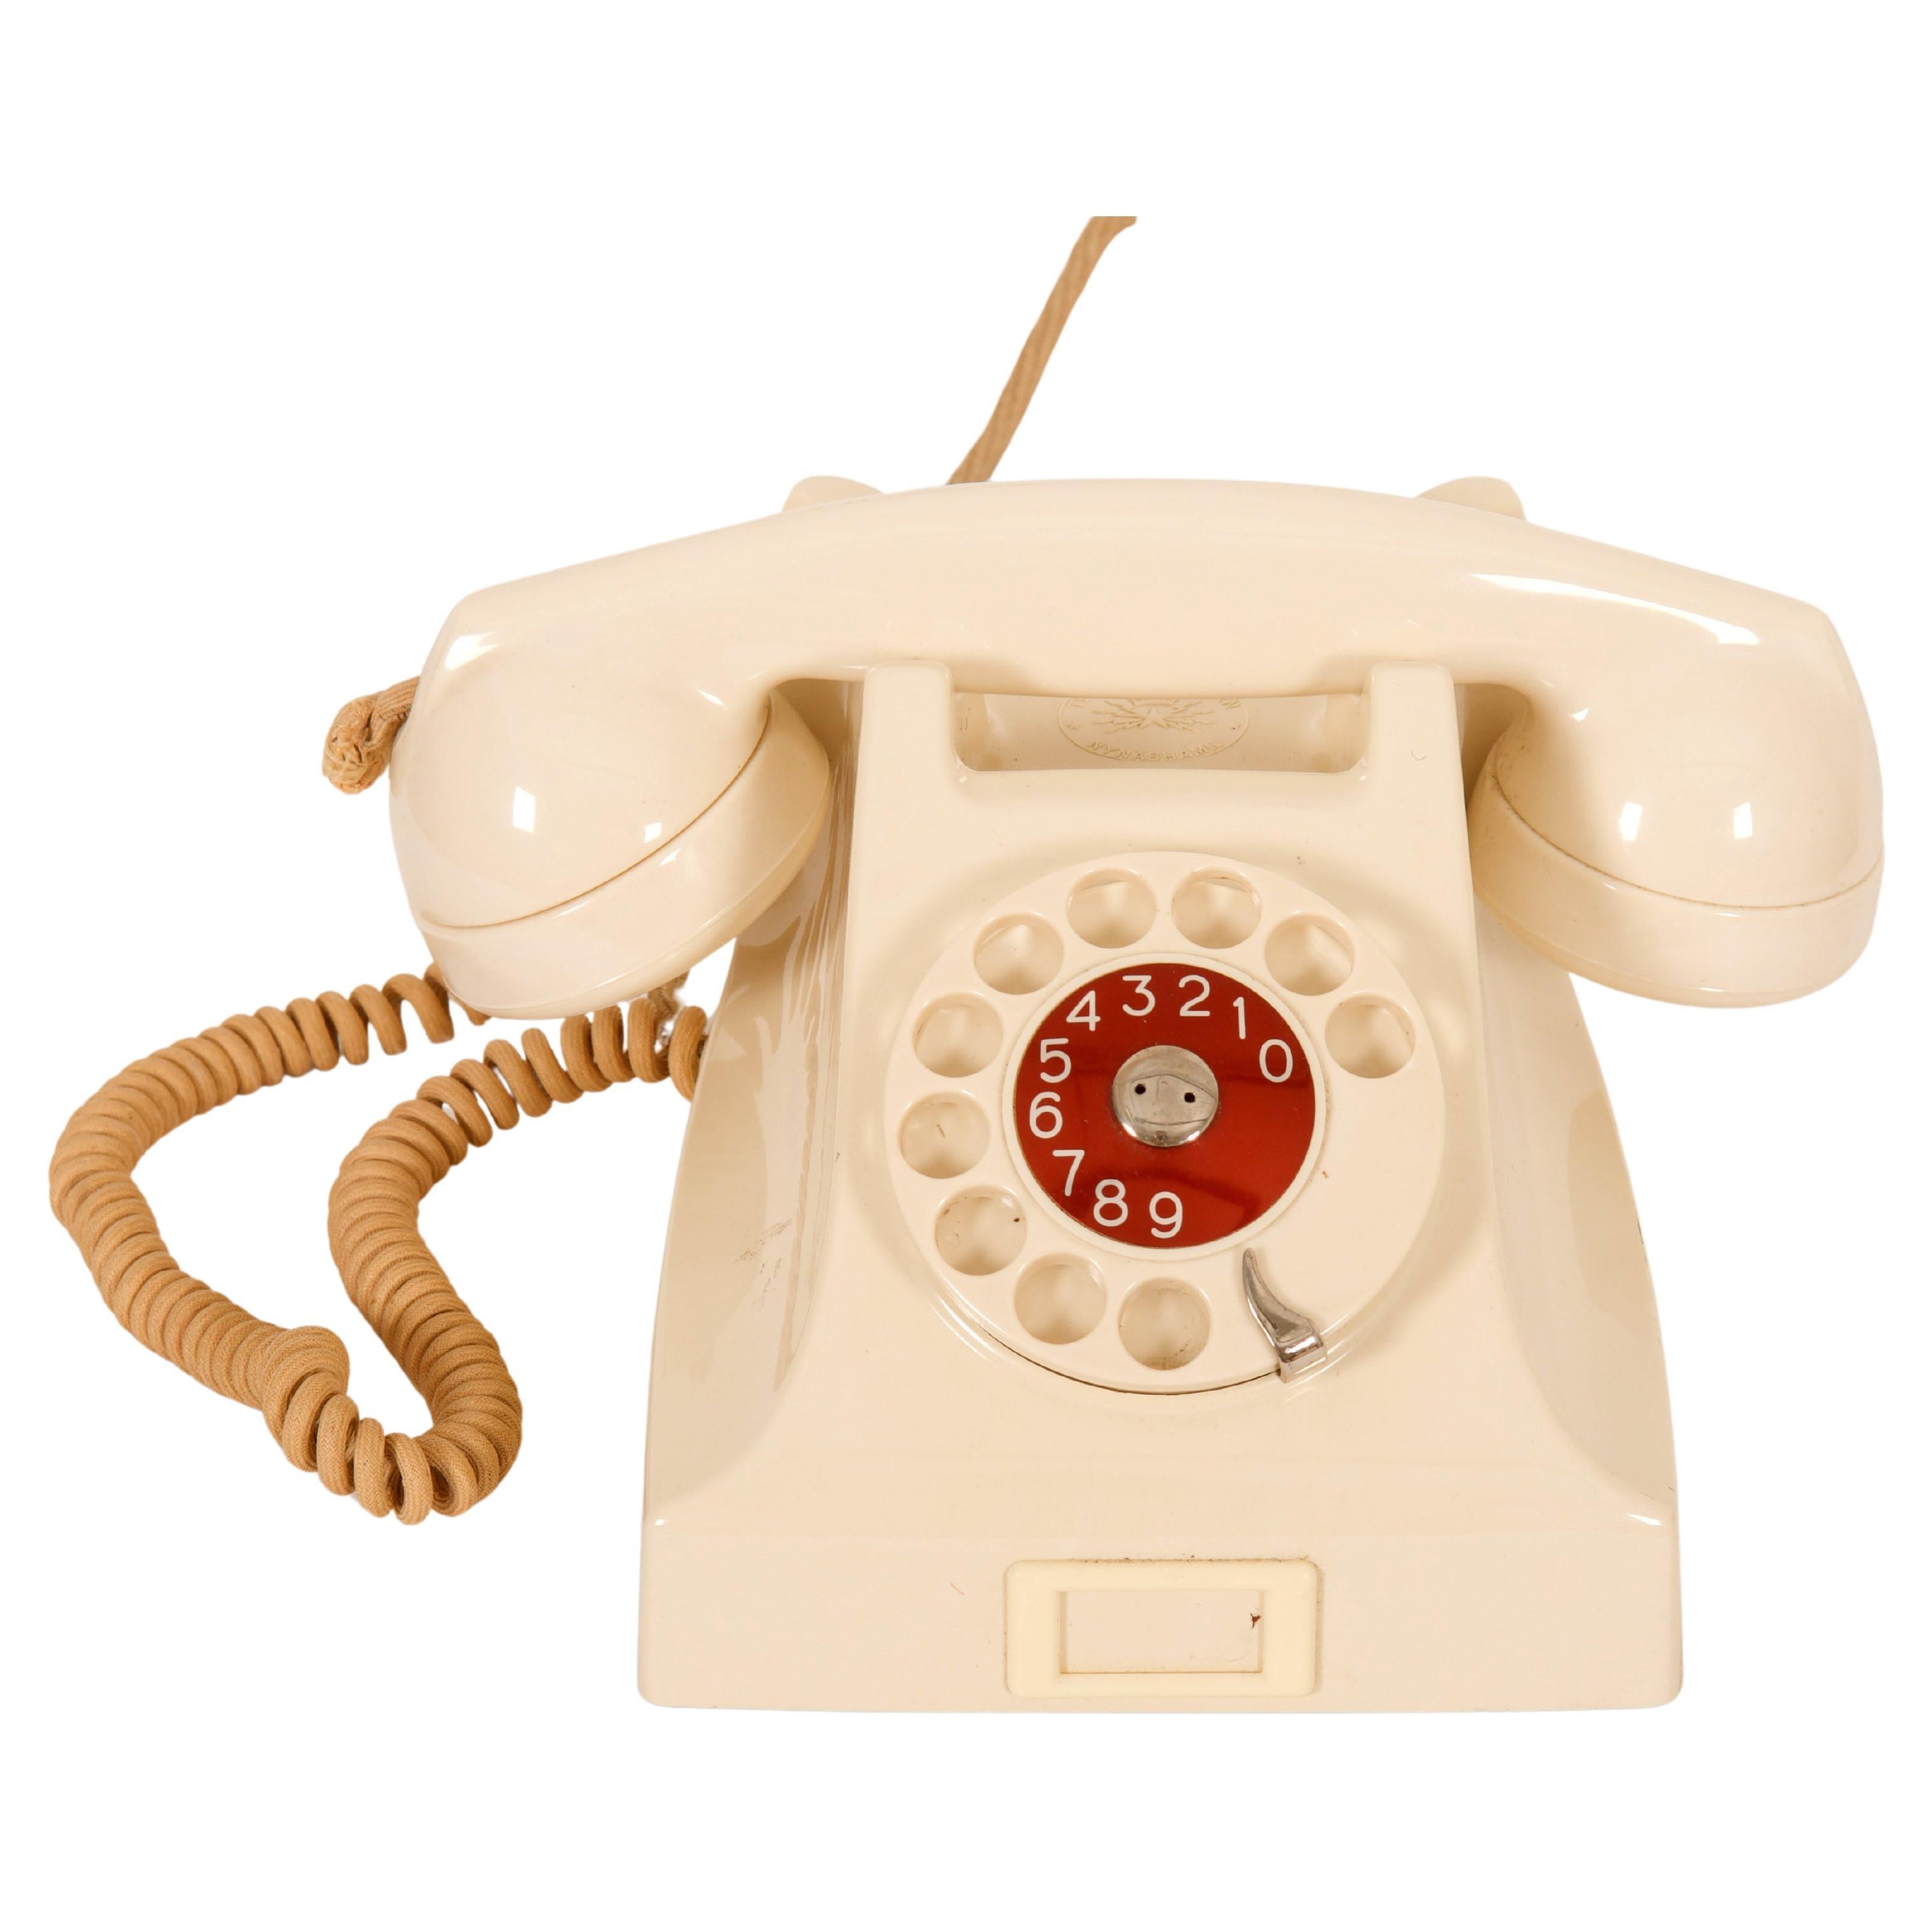 Phone suédois vintage de table en bakélite beige